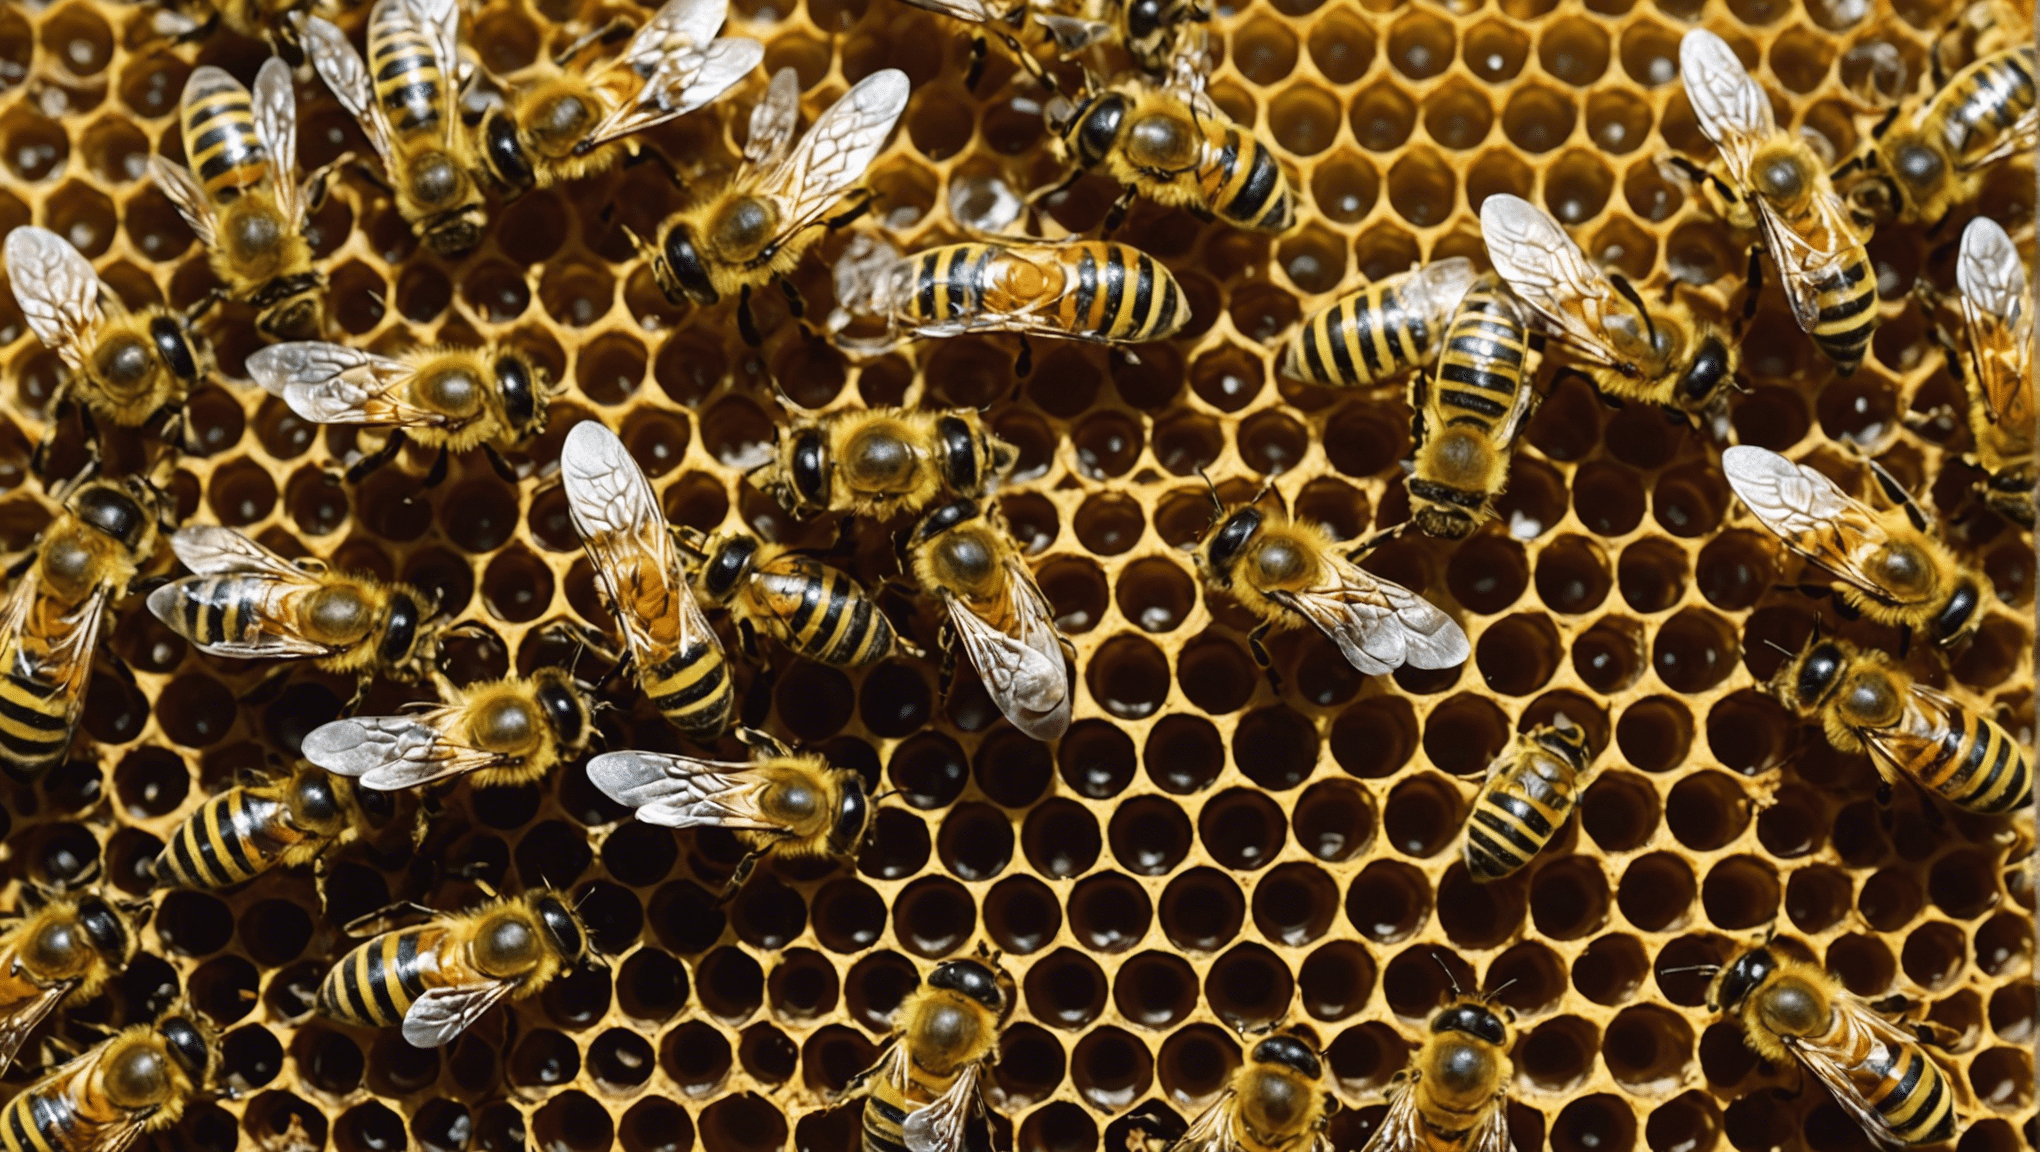 odkryj ukryte skarby pszczół: ich istotną rolę w przyrodzie, produkcję miodu i propolisu oraz ich wpływ na środowisko.